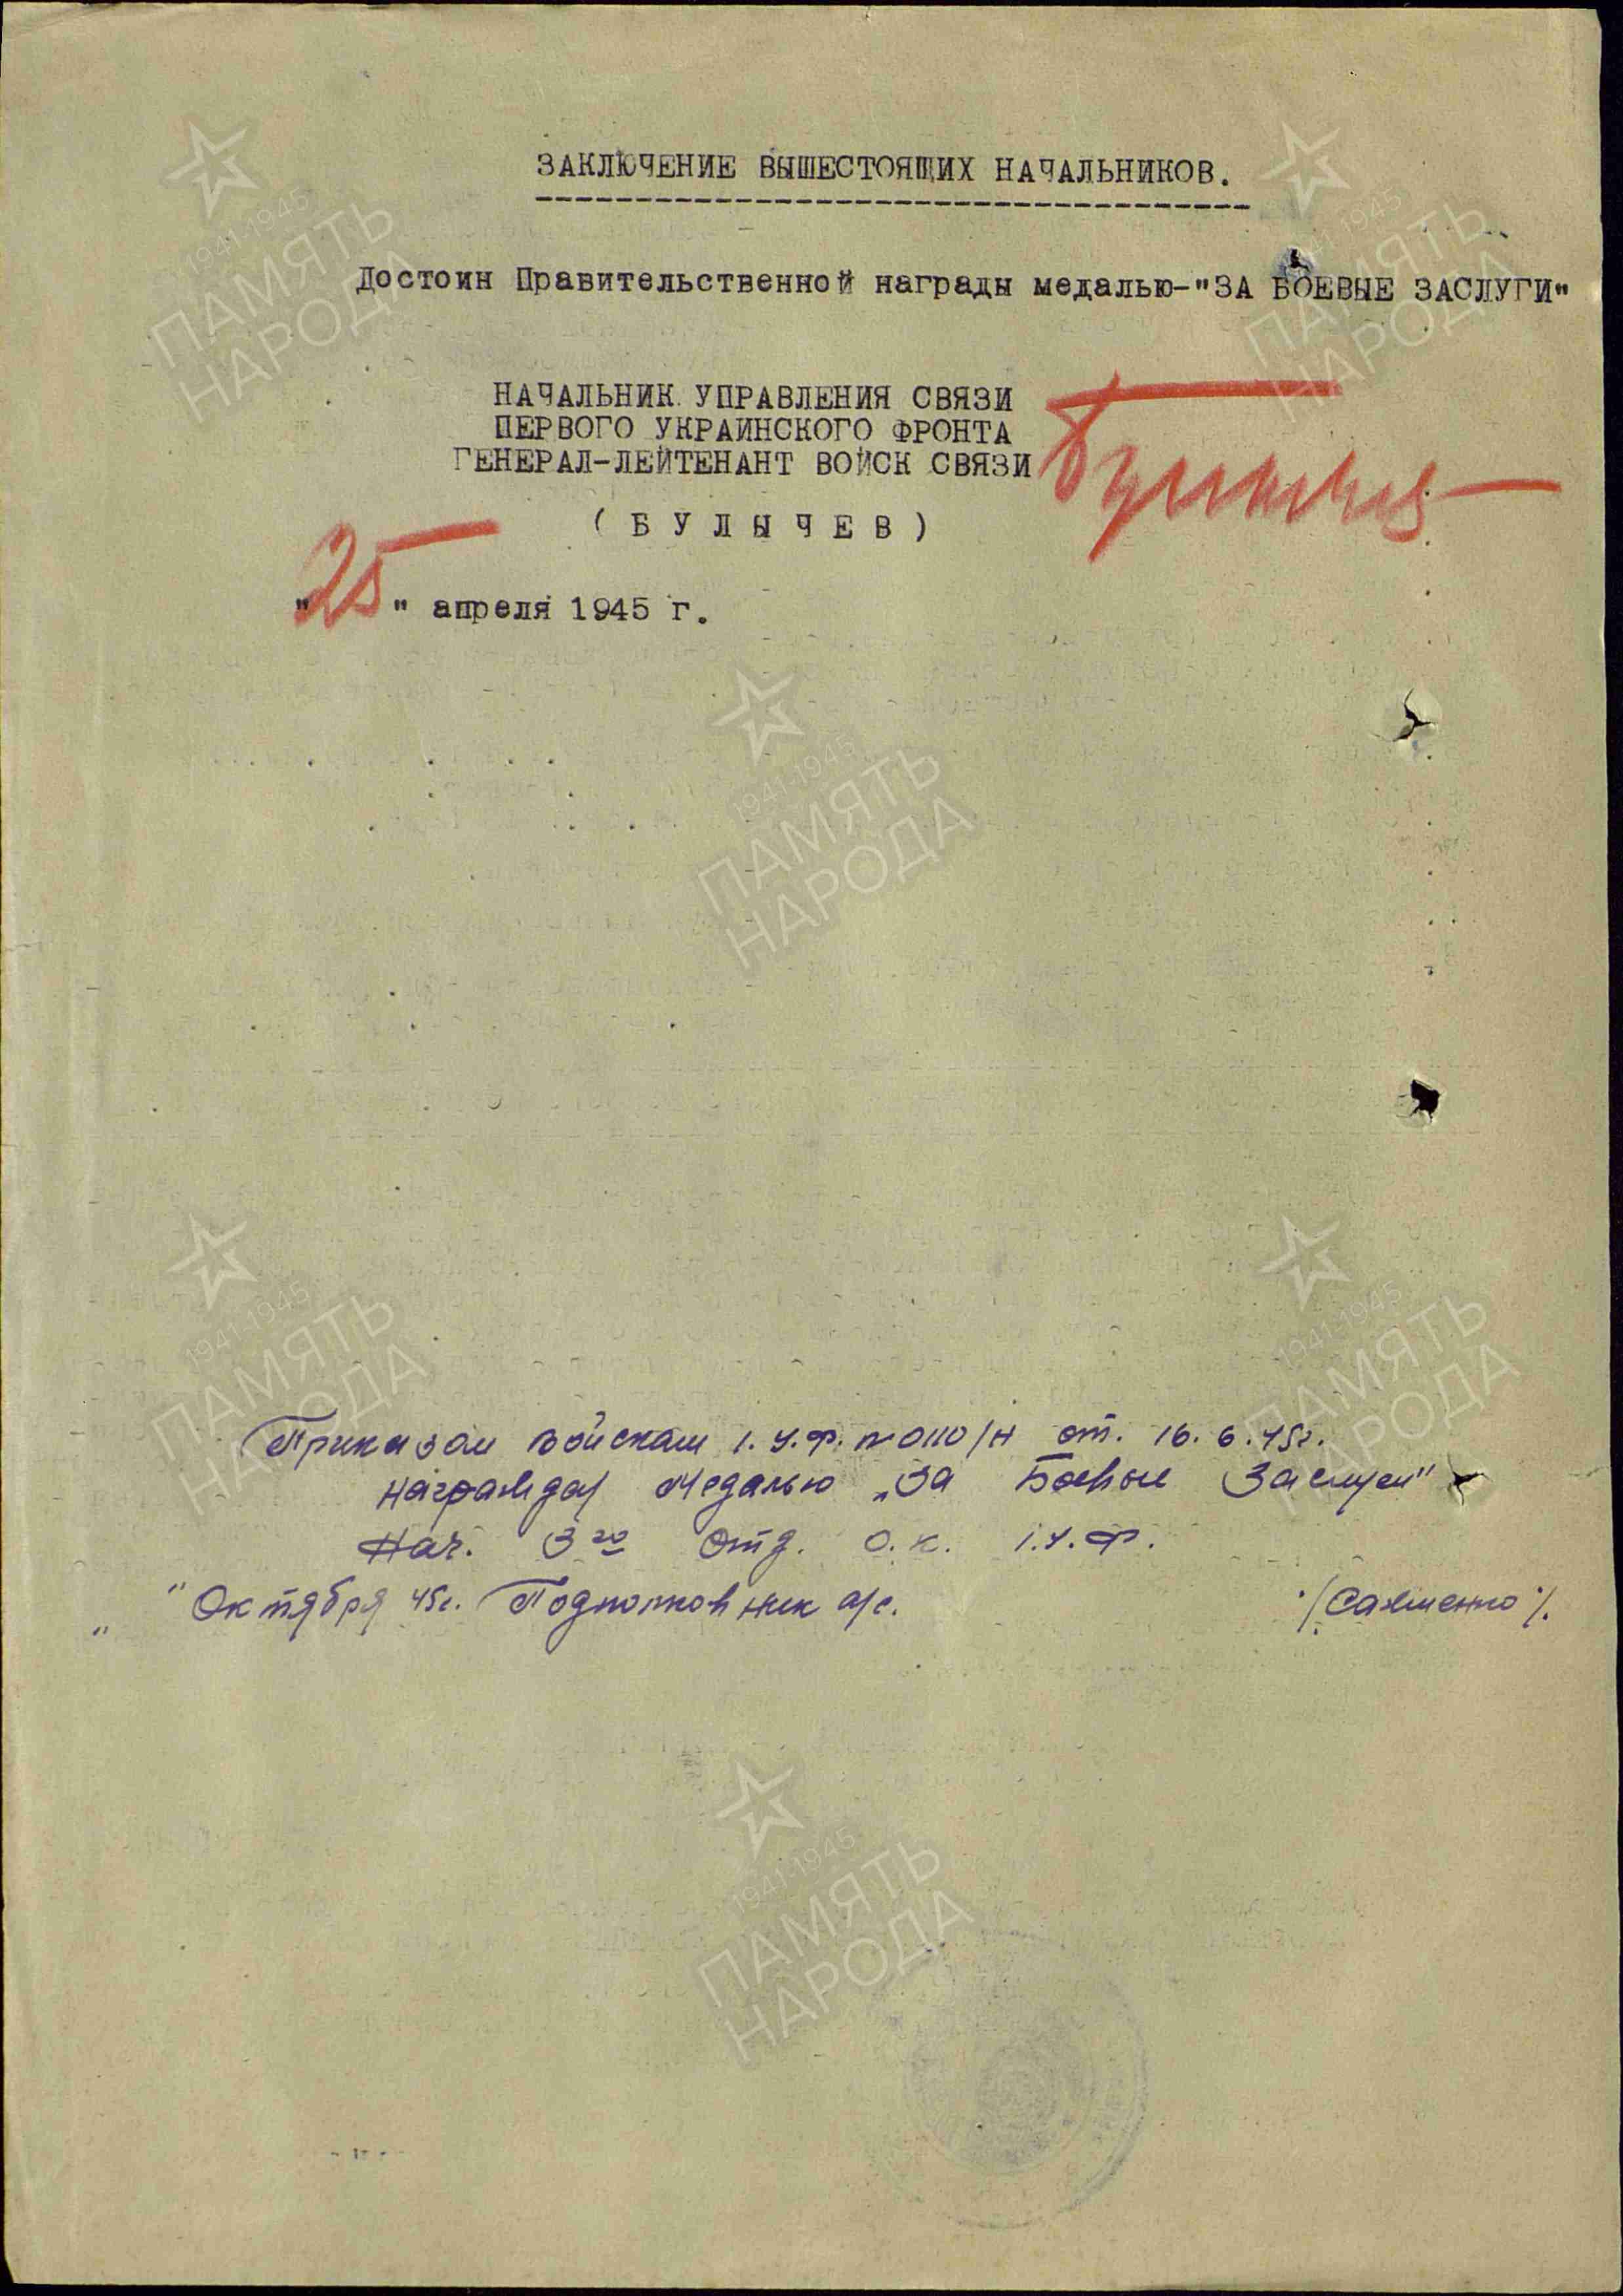 Абизяев А.И. Наградной лист от 16 апреля 1945 года к медали «За боевые заслуги» (архивная копия, 2 страницы)